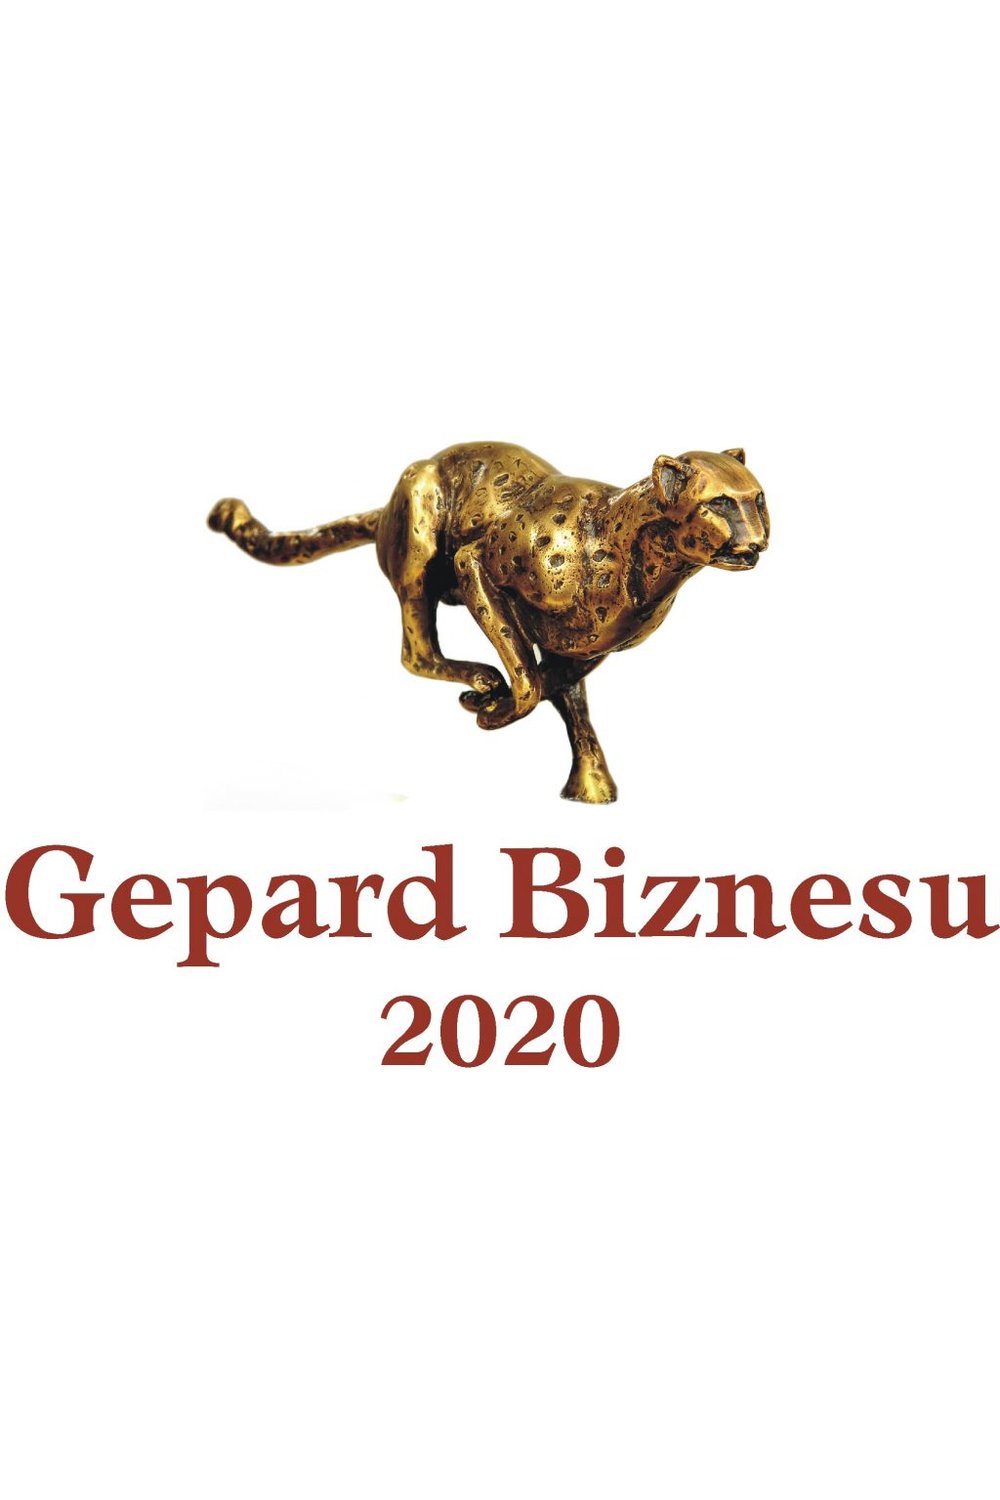 Gepard biznesu 2020 - zdjęcie